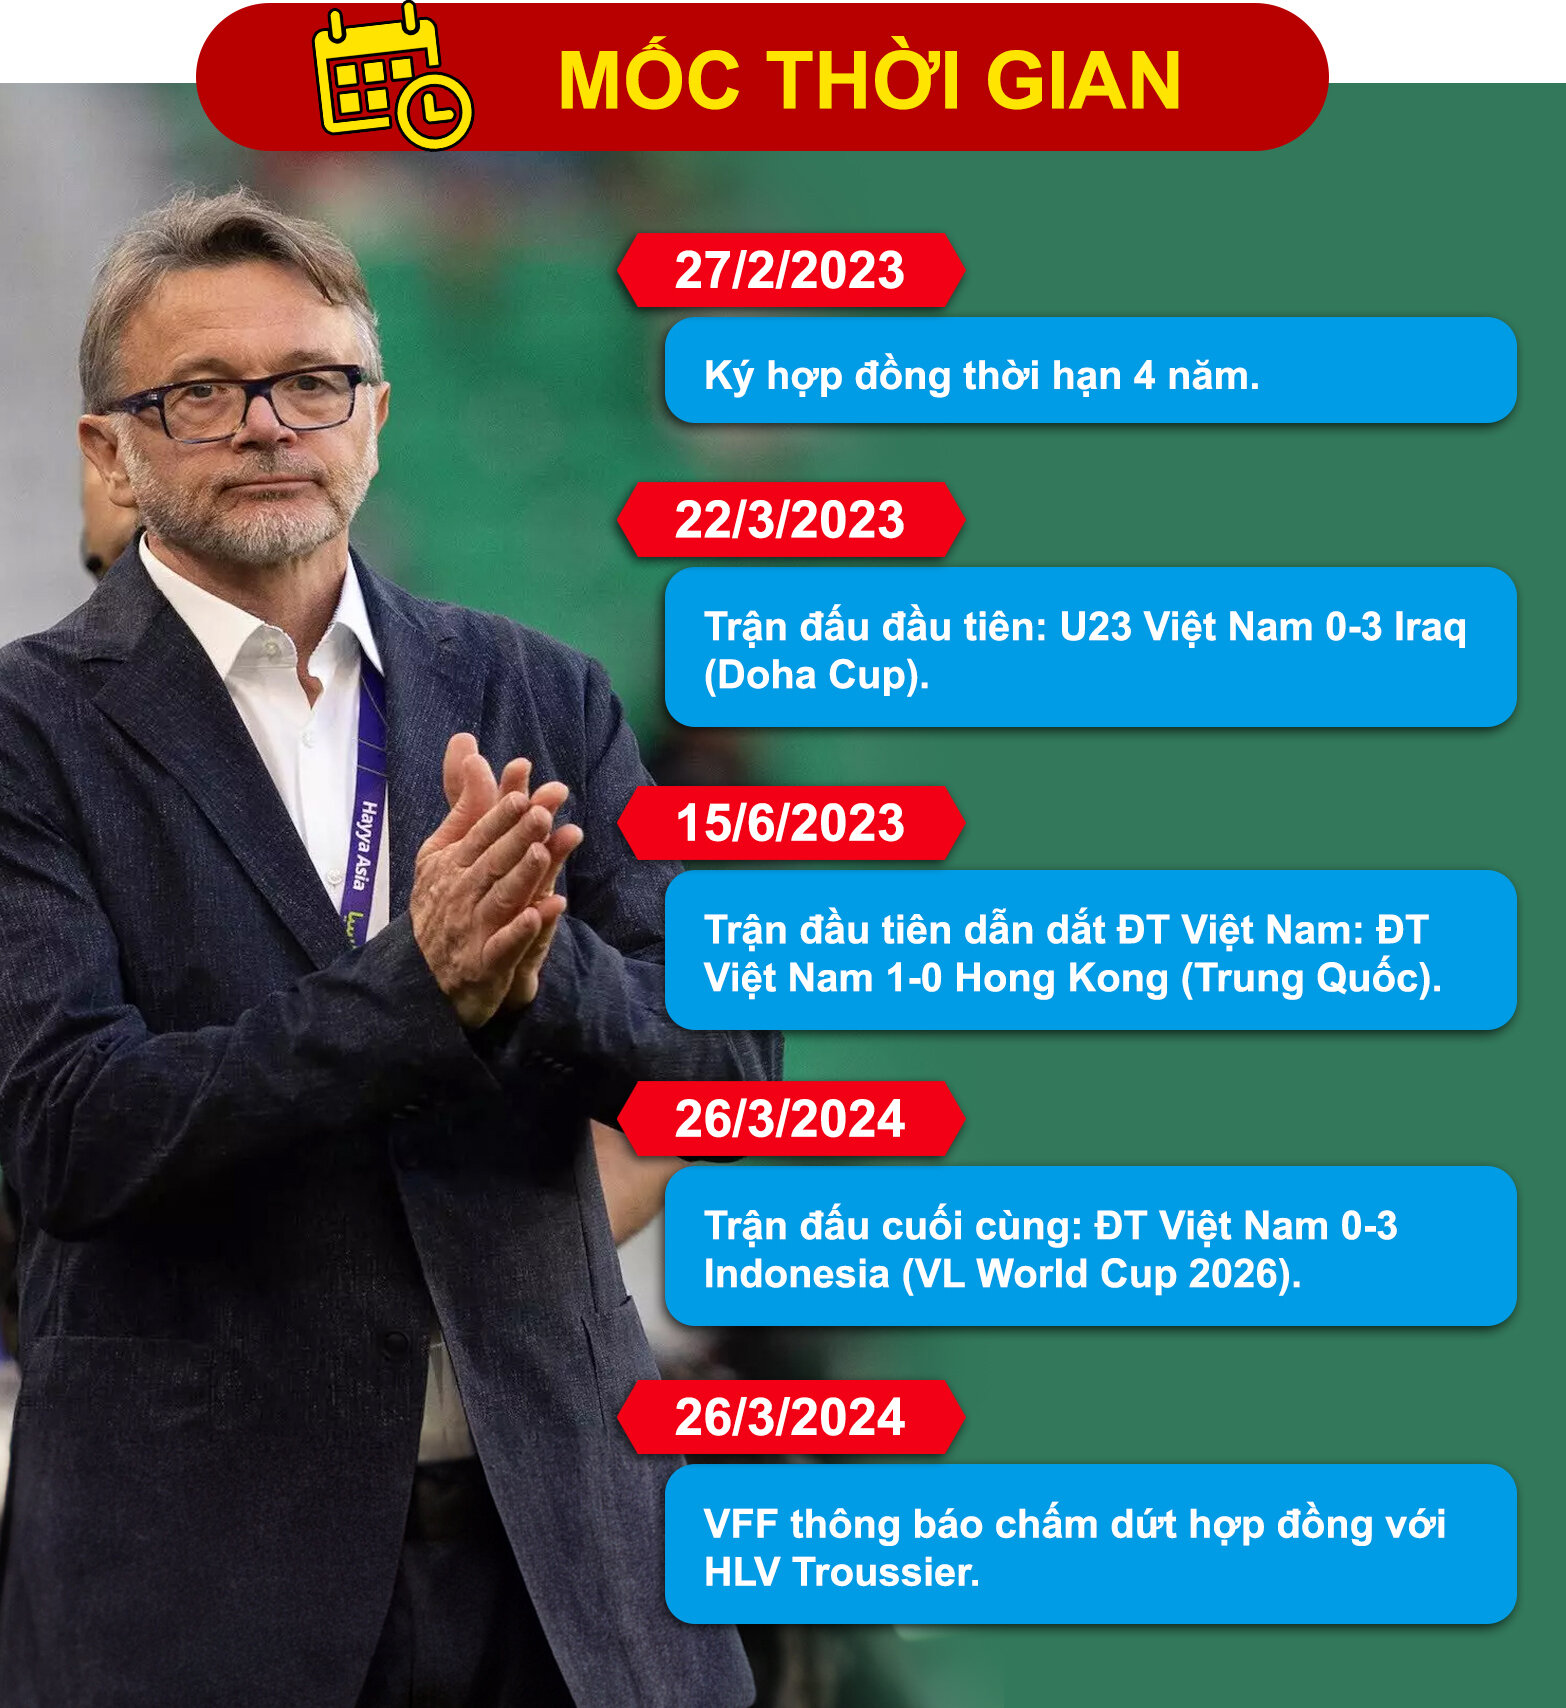 Dấu ấn HLV Troussier ở tuyển Việt Nam: Kỷ lục buồn, phát ngôn gây sốc - 1